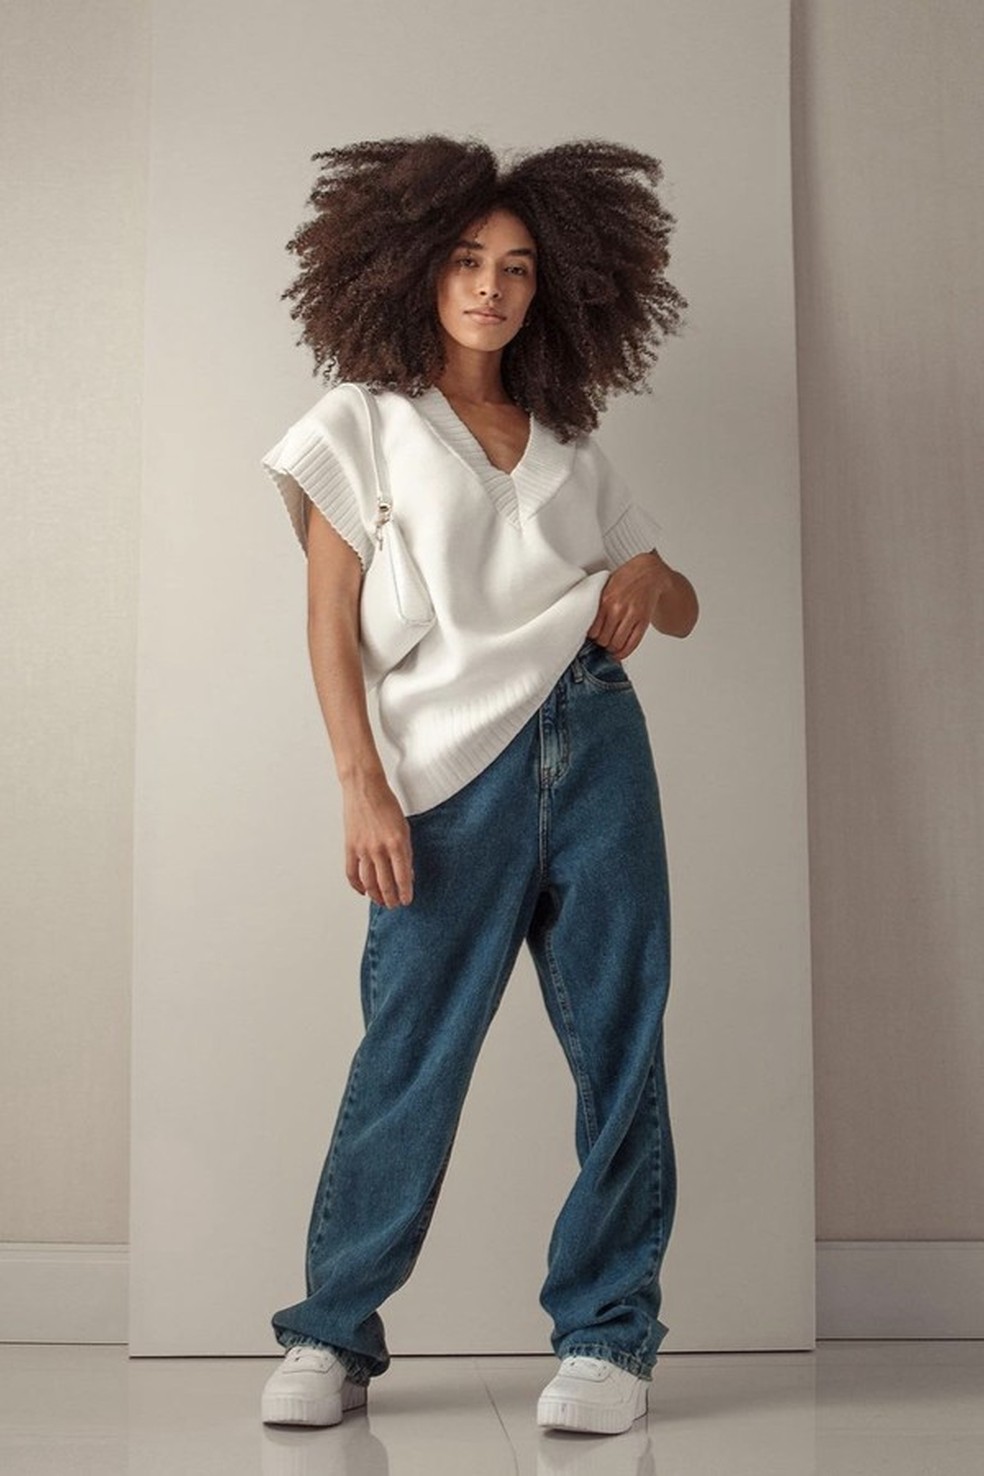 Querendo fugir da versão skinny? Confira diferentes modelagens de calça (Foto: @todecrespa) — Foto: Glamour